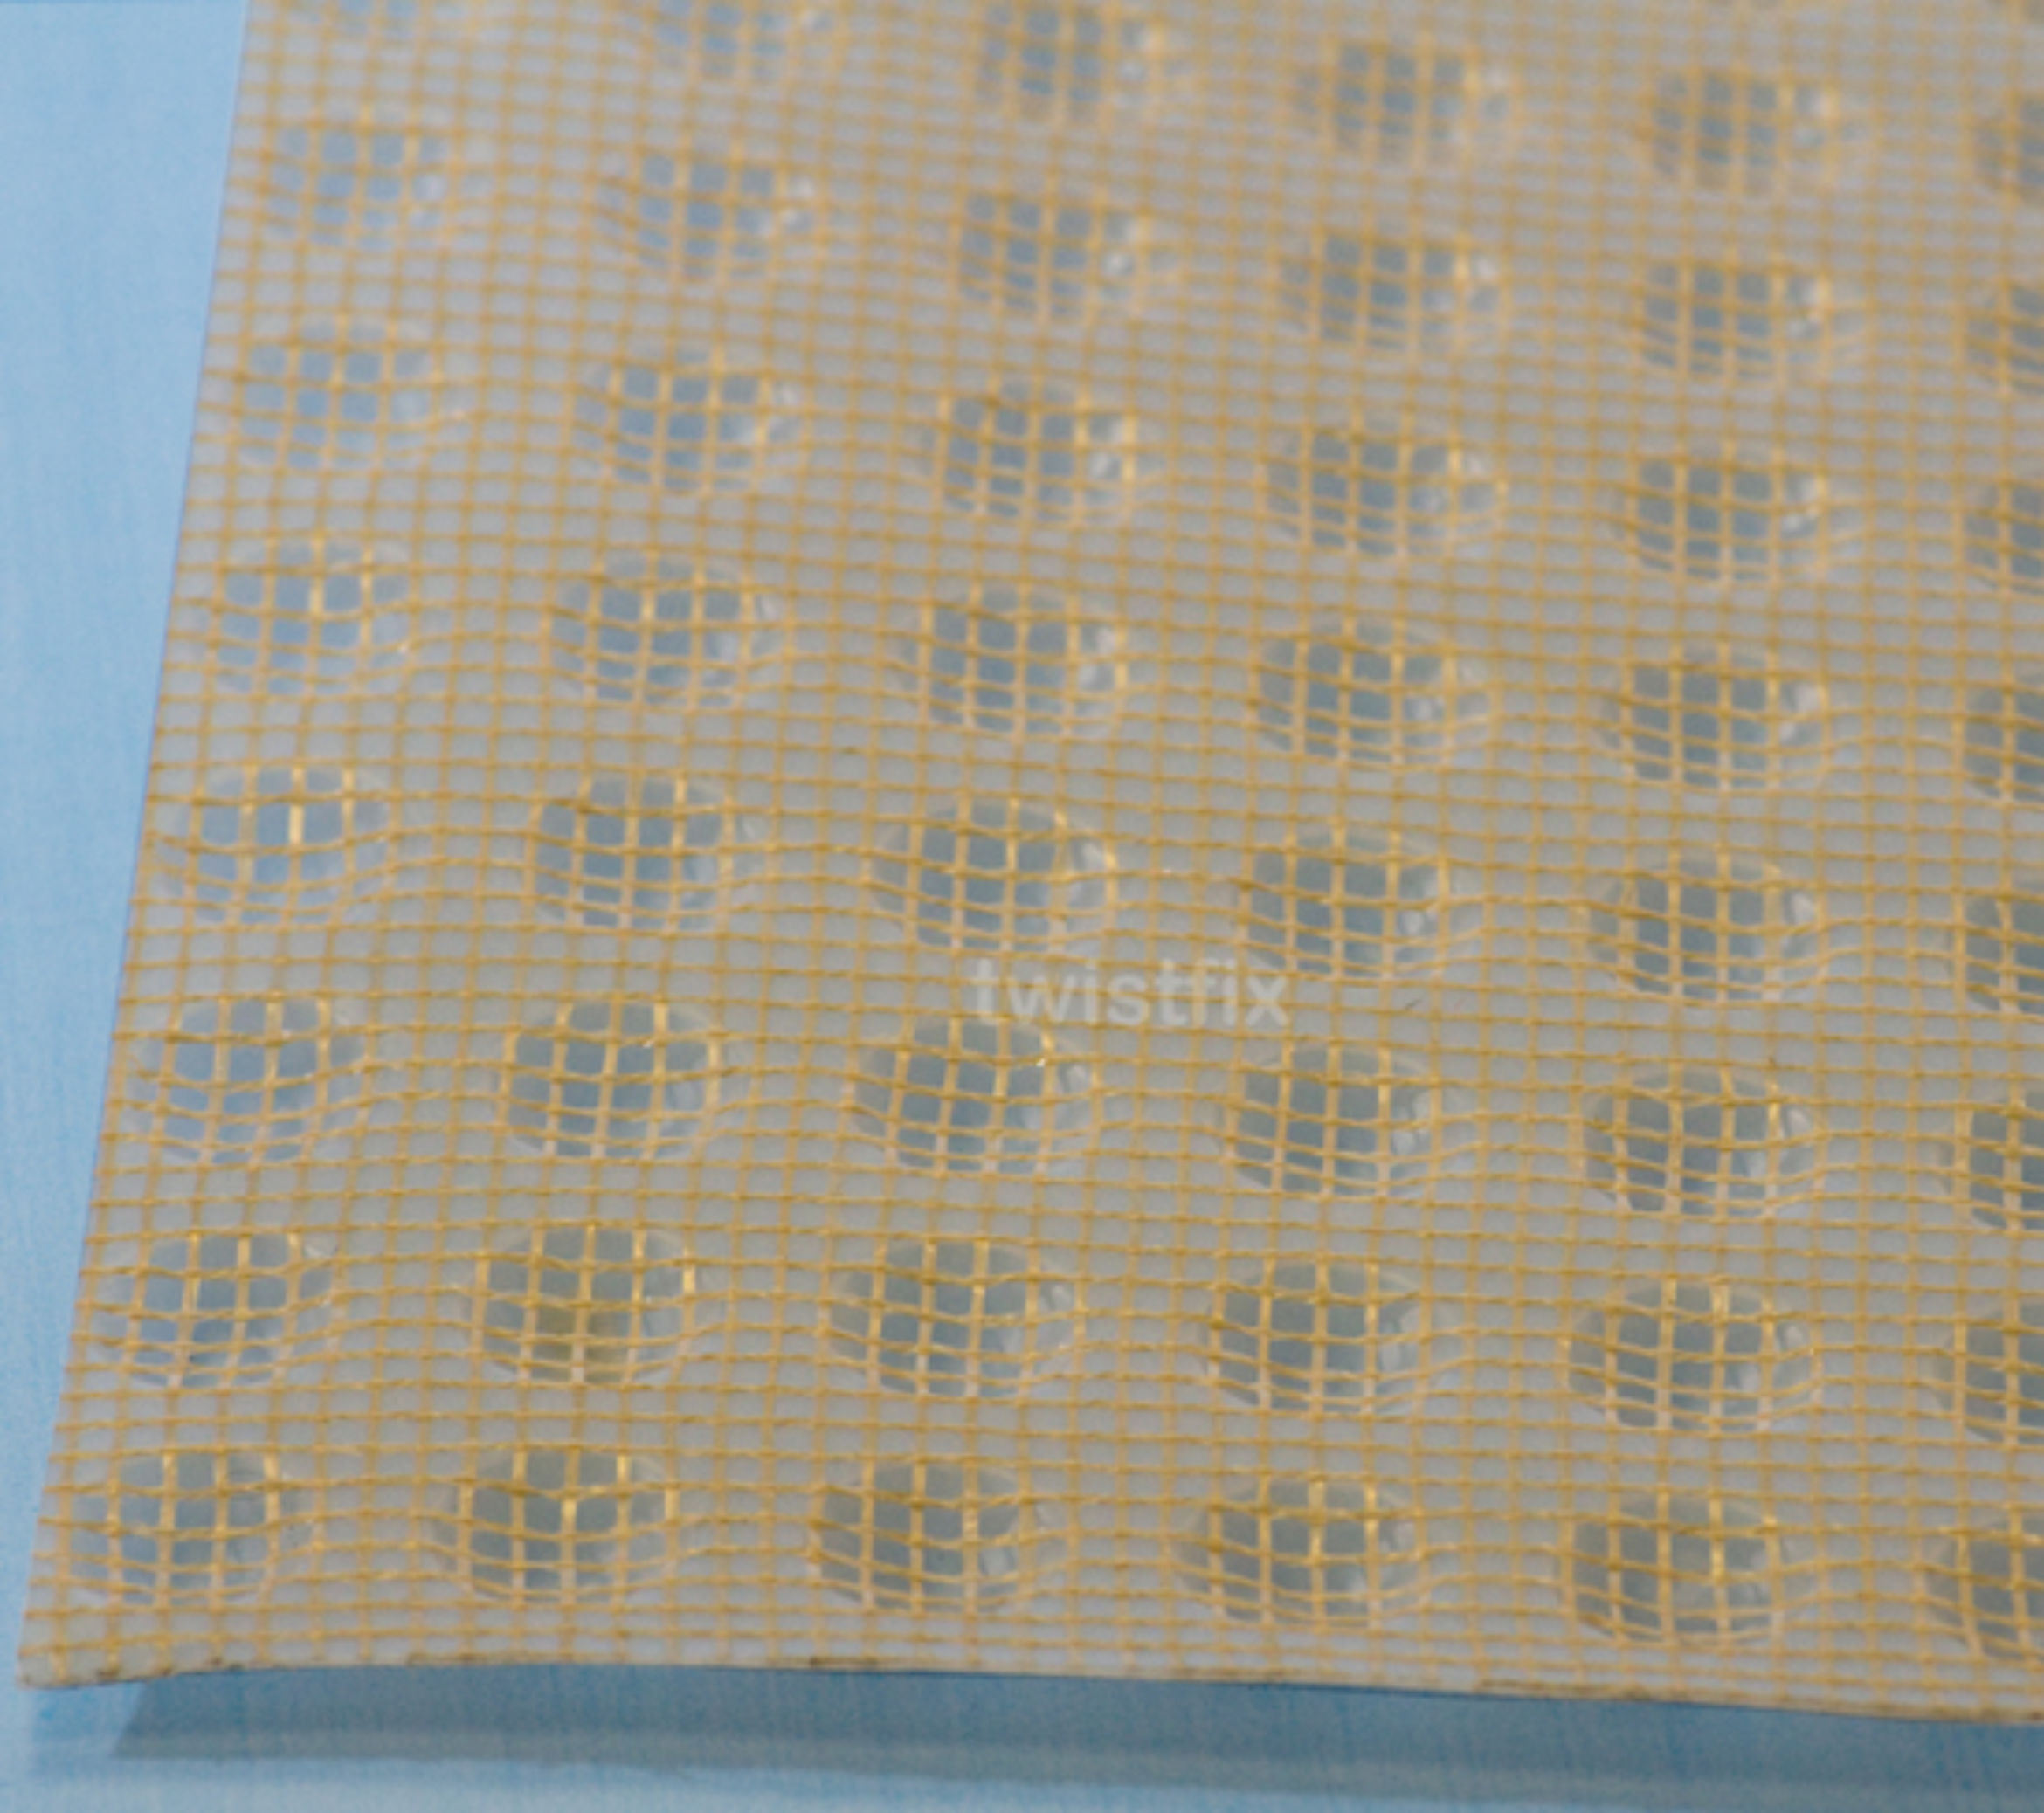 plaster membrane mesh